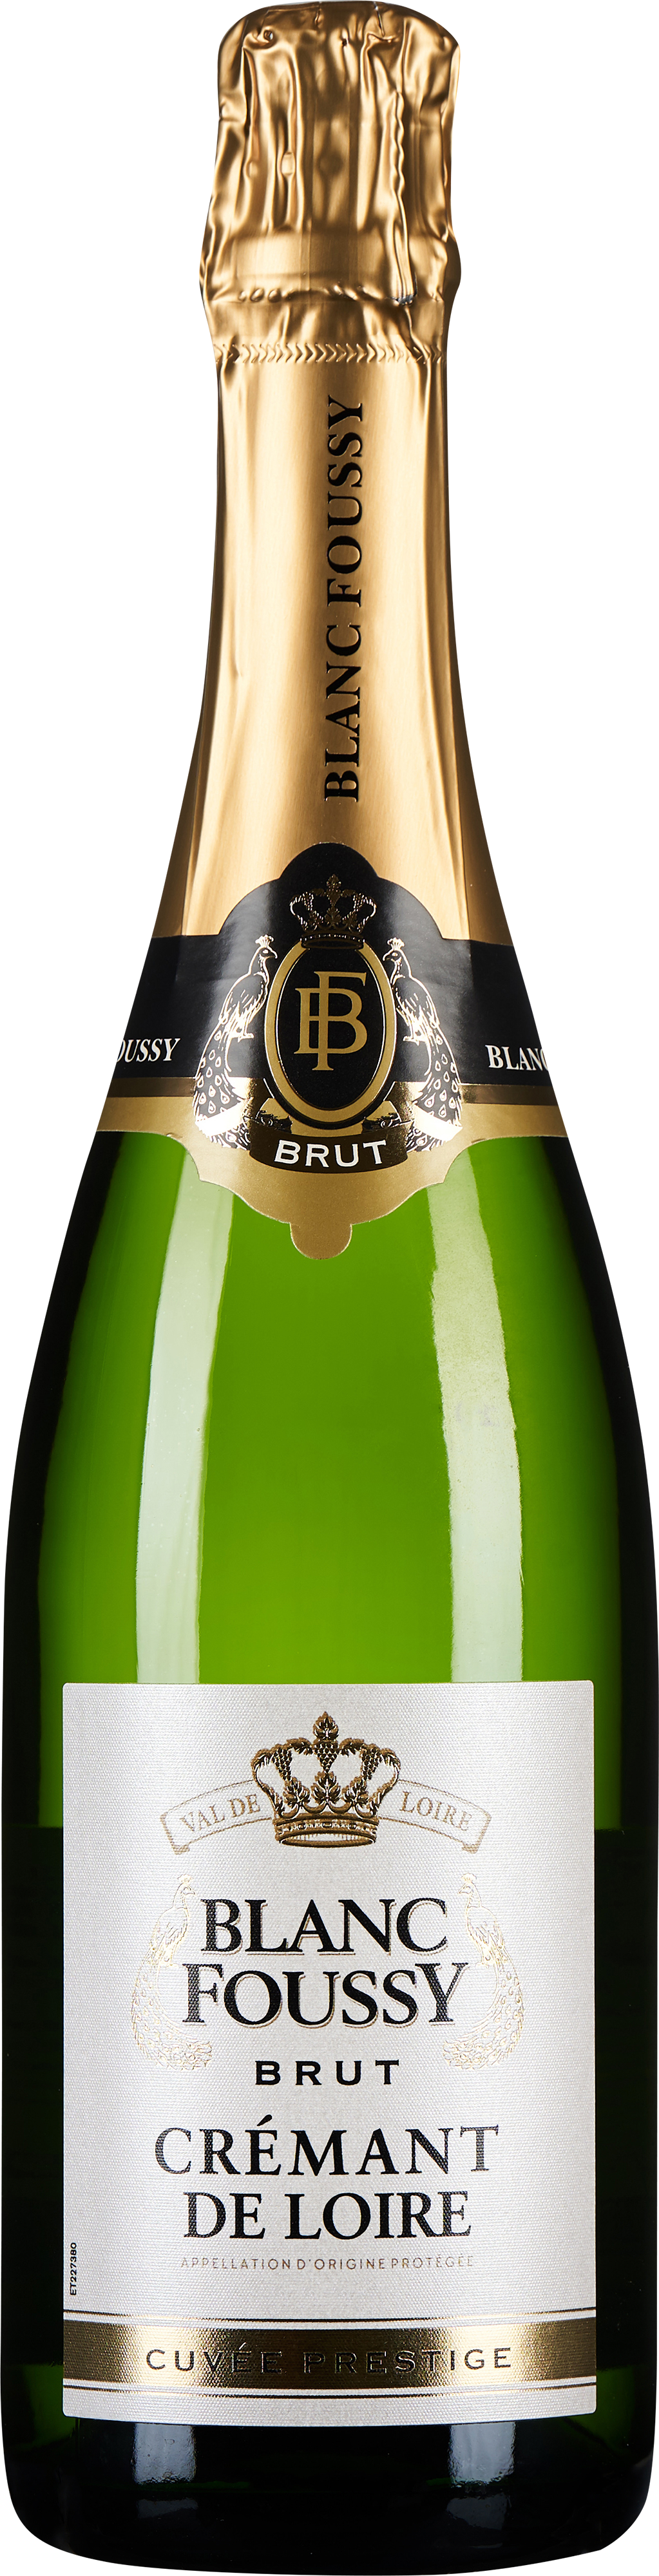 Blanc Foussy Crémant de Loire Brut Cuvée Prestige 2020 - WEIN & CO